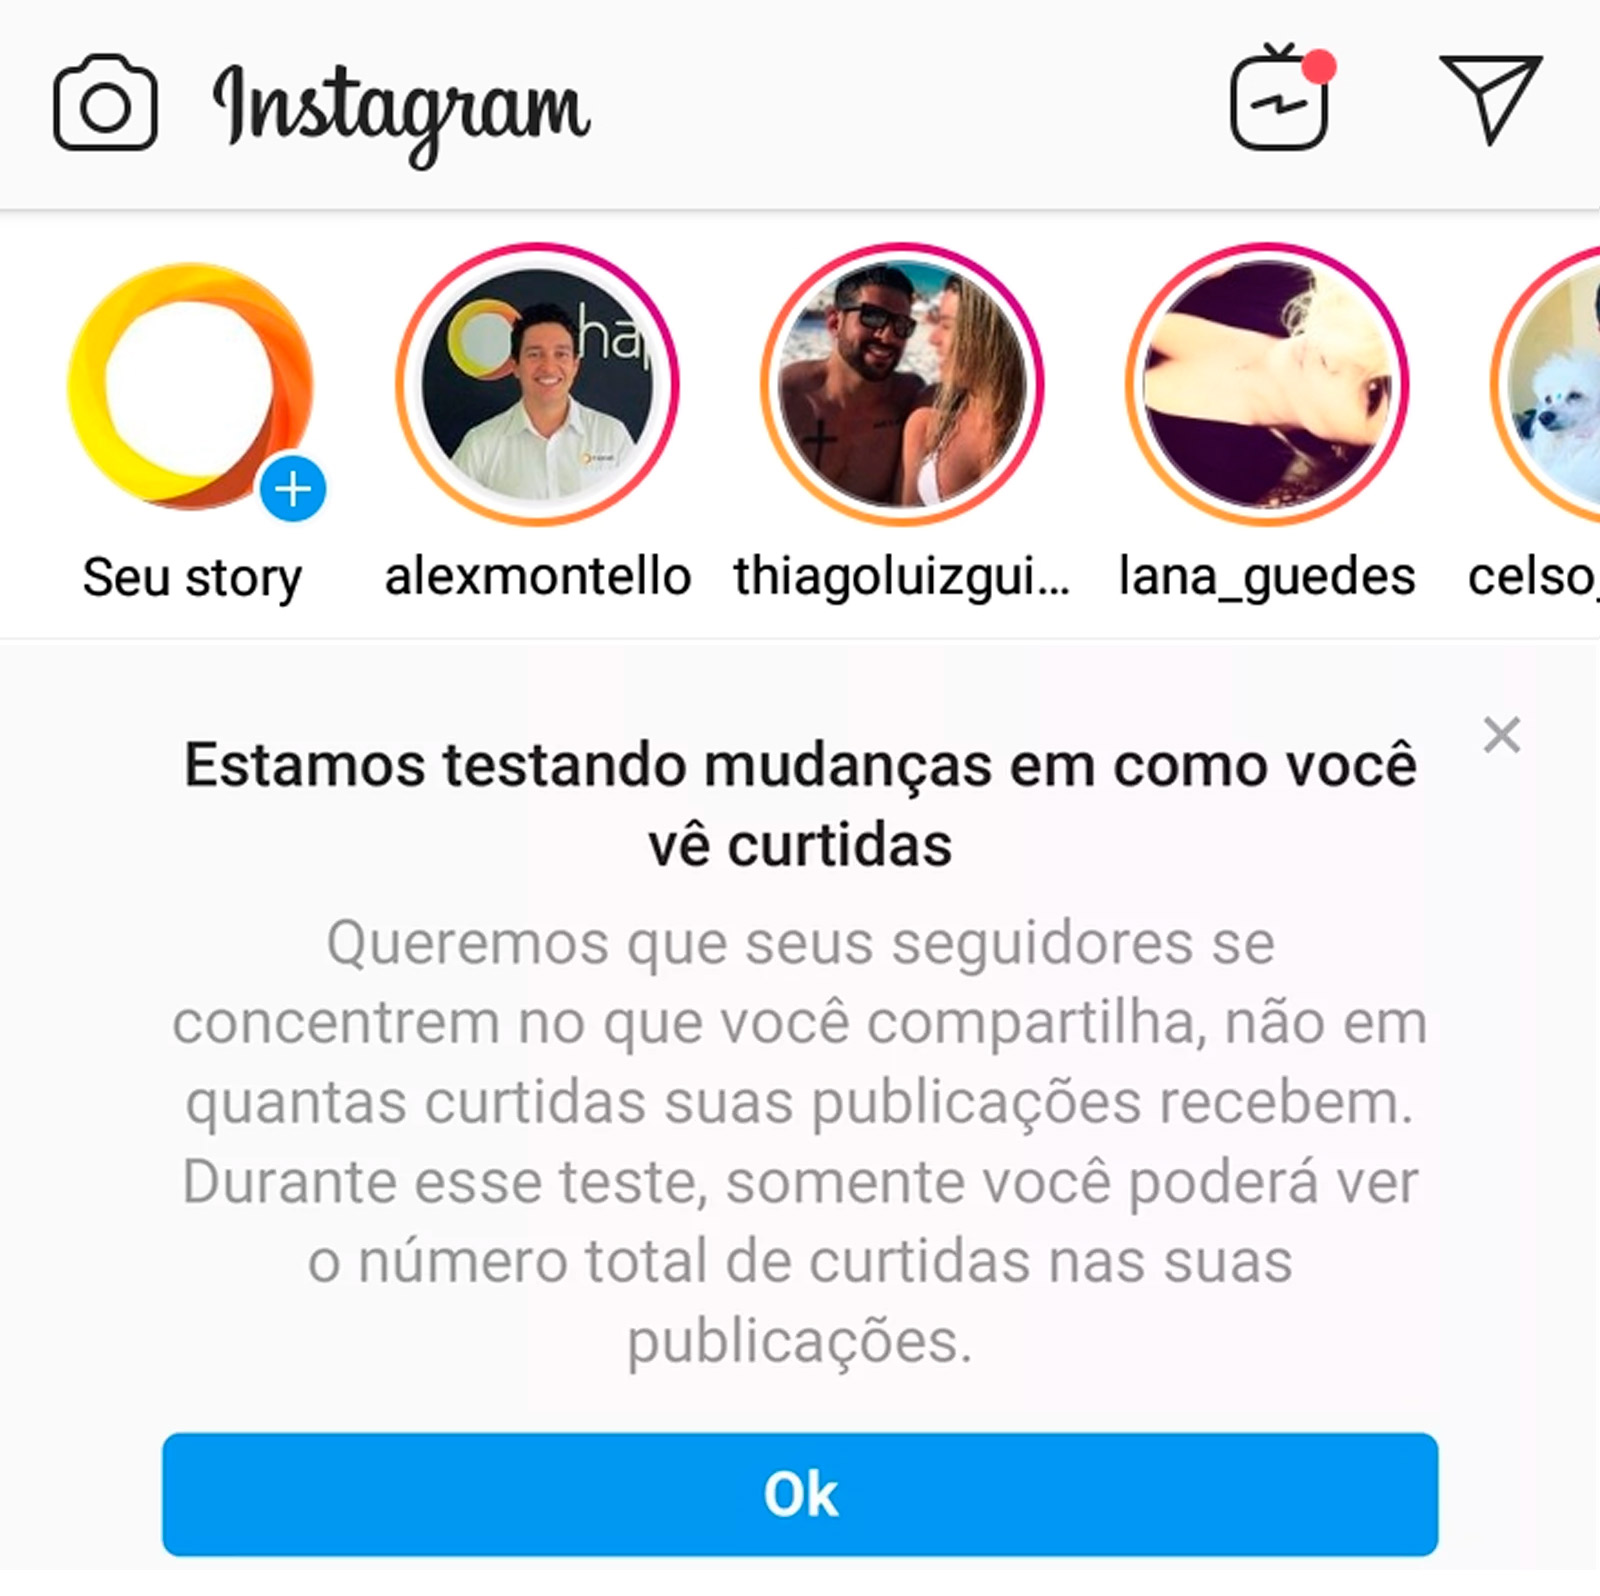 O Instagram está realizando um teste ocultando as curtidas no Instagram